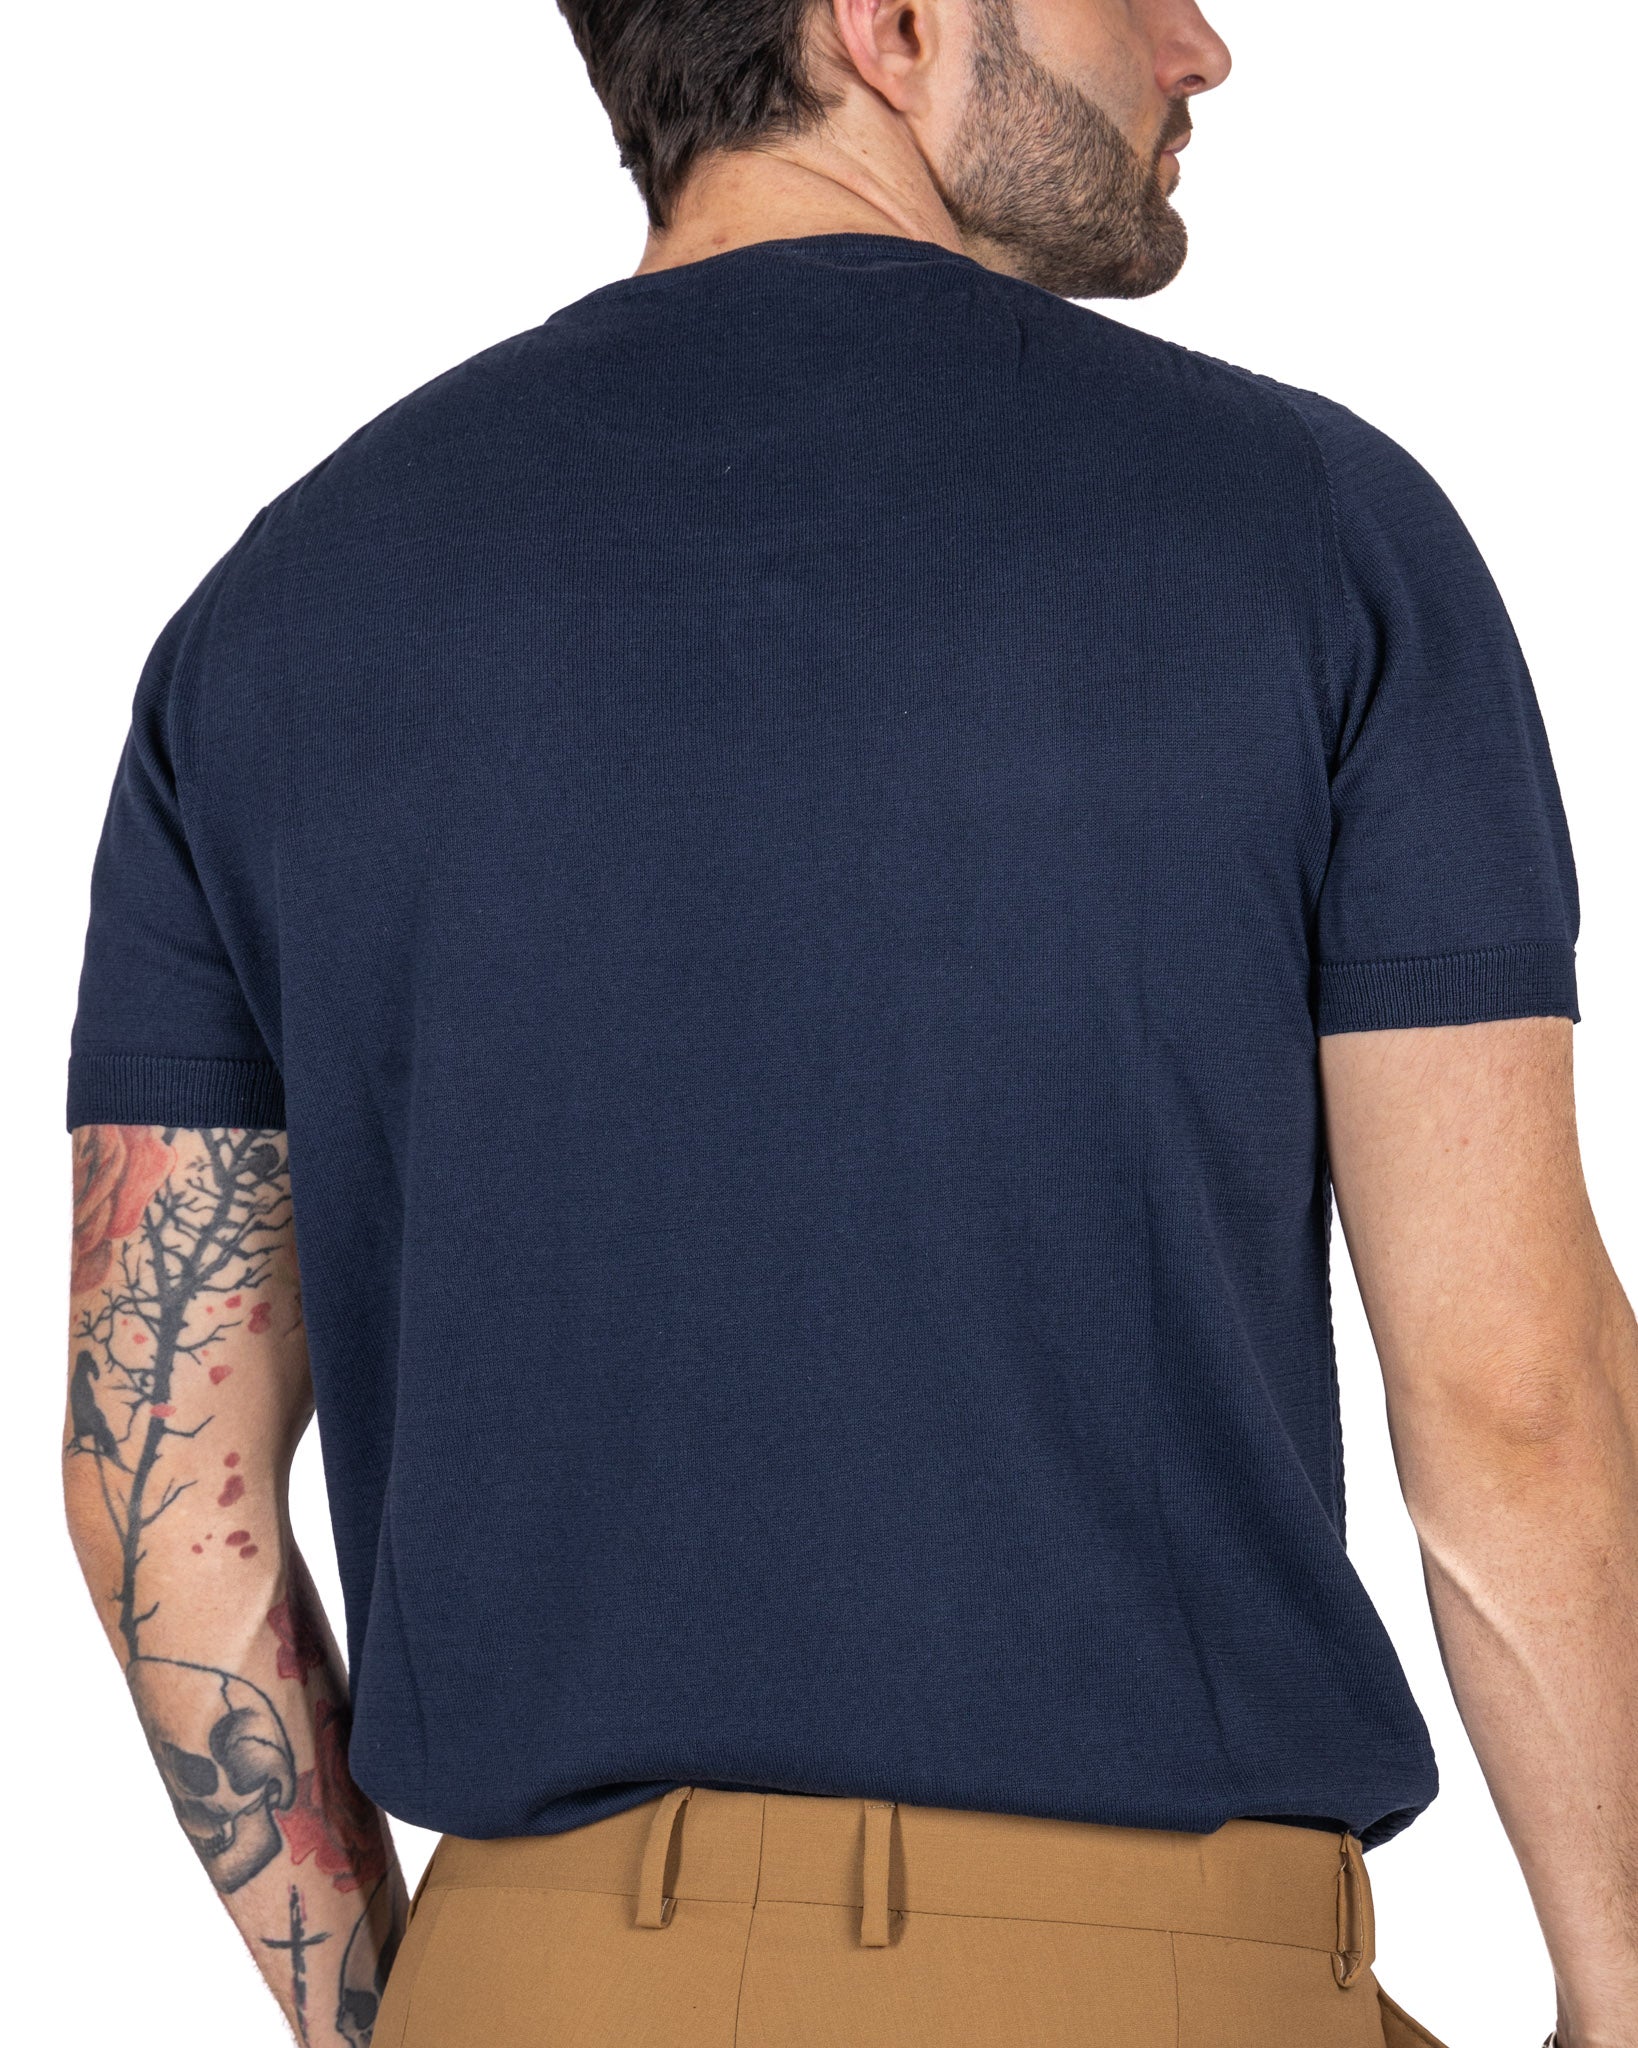 Carlos - t-shirt tramata in maglia blu